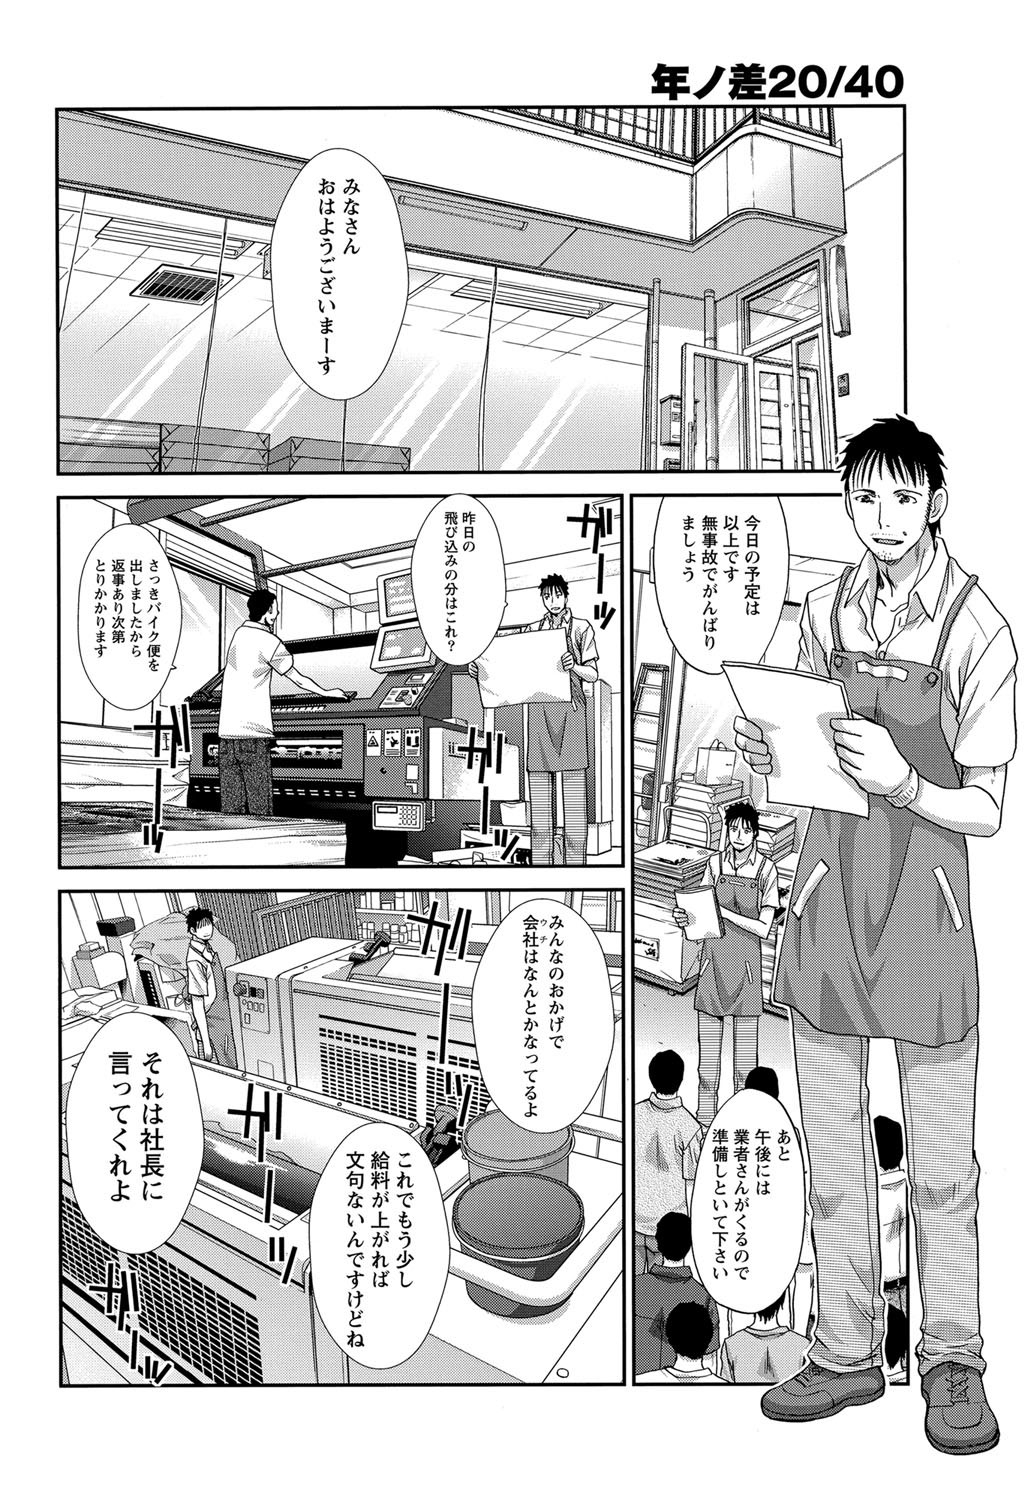 [Itaba Hiroshi] 20/40 Toshi no Sa   Ch.1-9 3